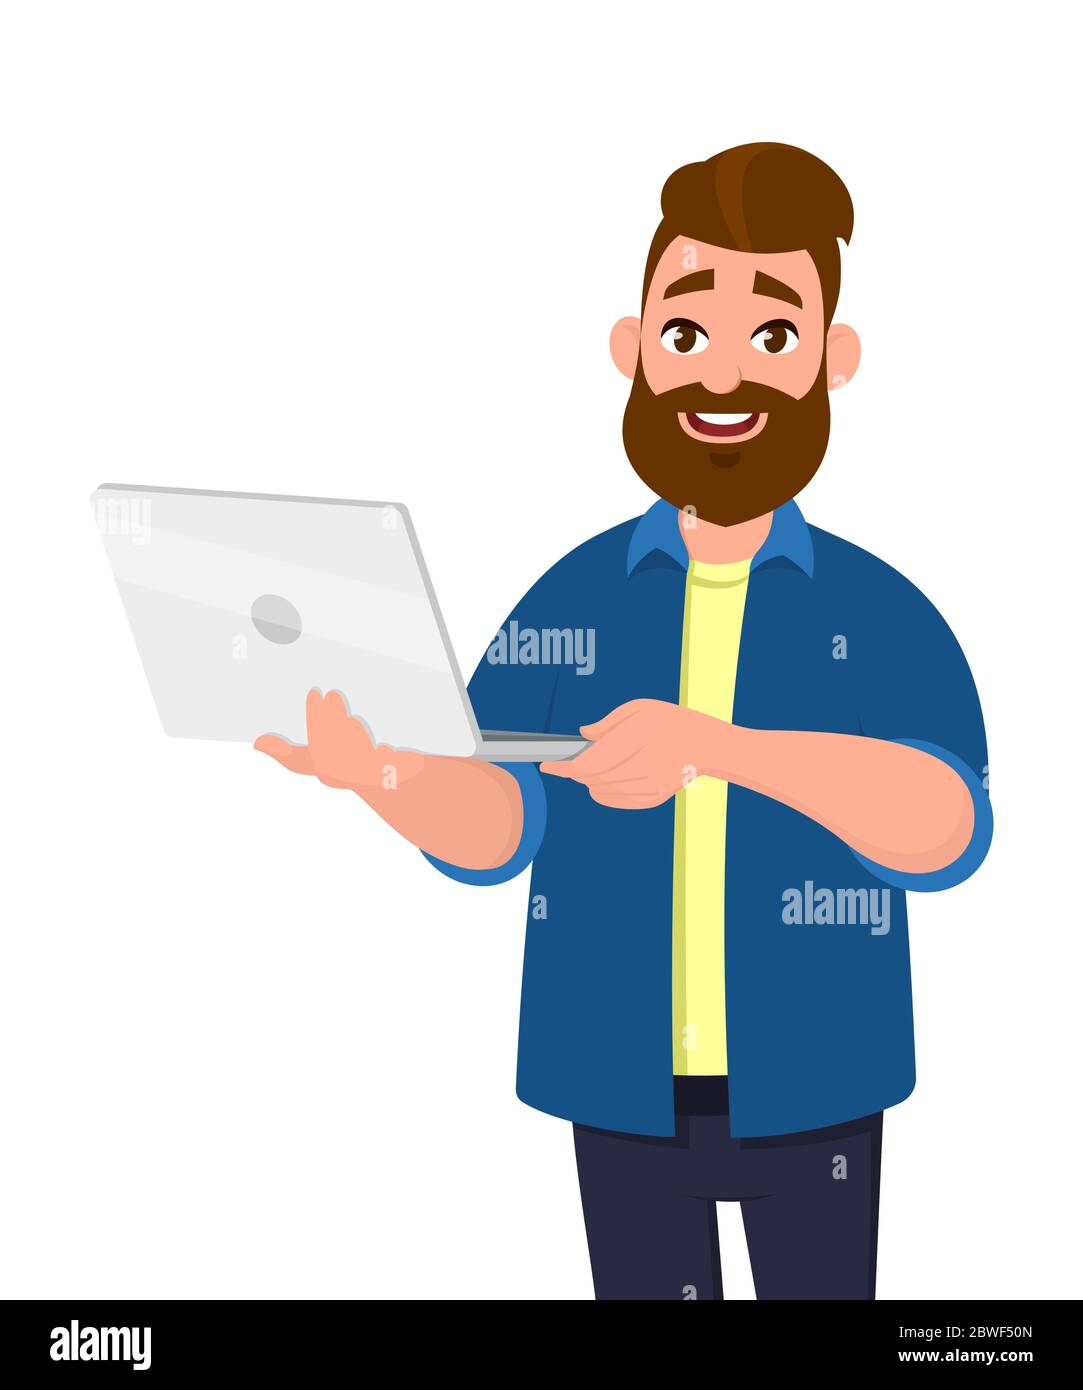 Junger schöner Mann, der Laptop hält und lächelnd im Stehen. Abbildung des Laptop-Computerkonzepts. Vektor-Illustration im Cartoon-Stil. Stock Vektor